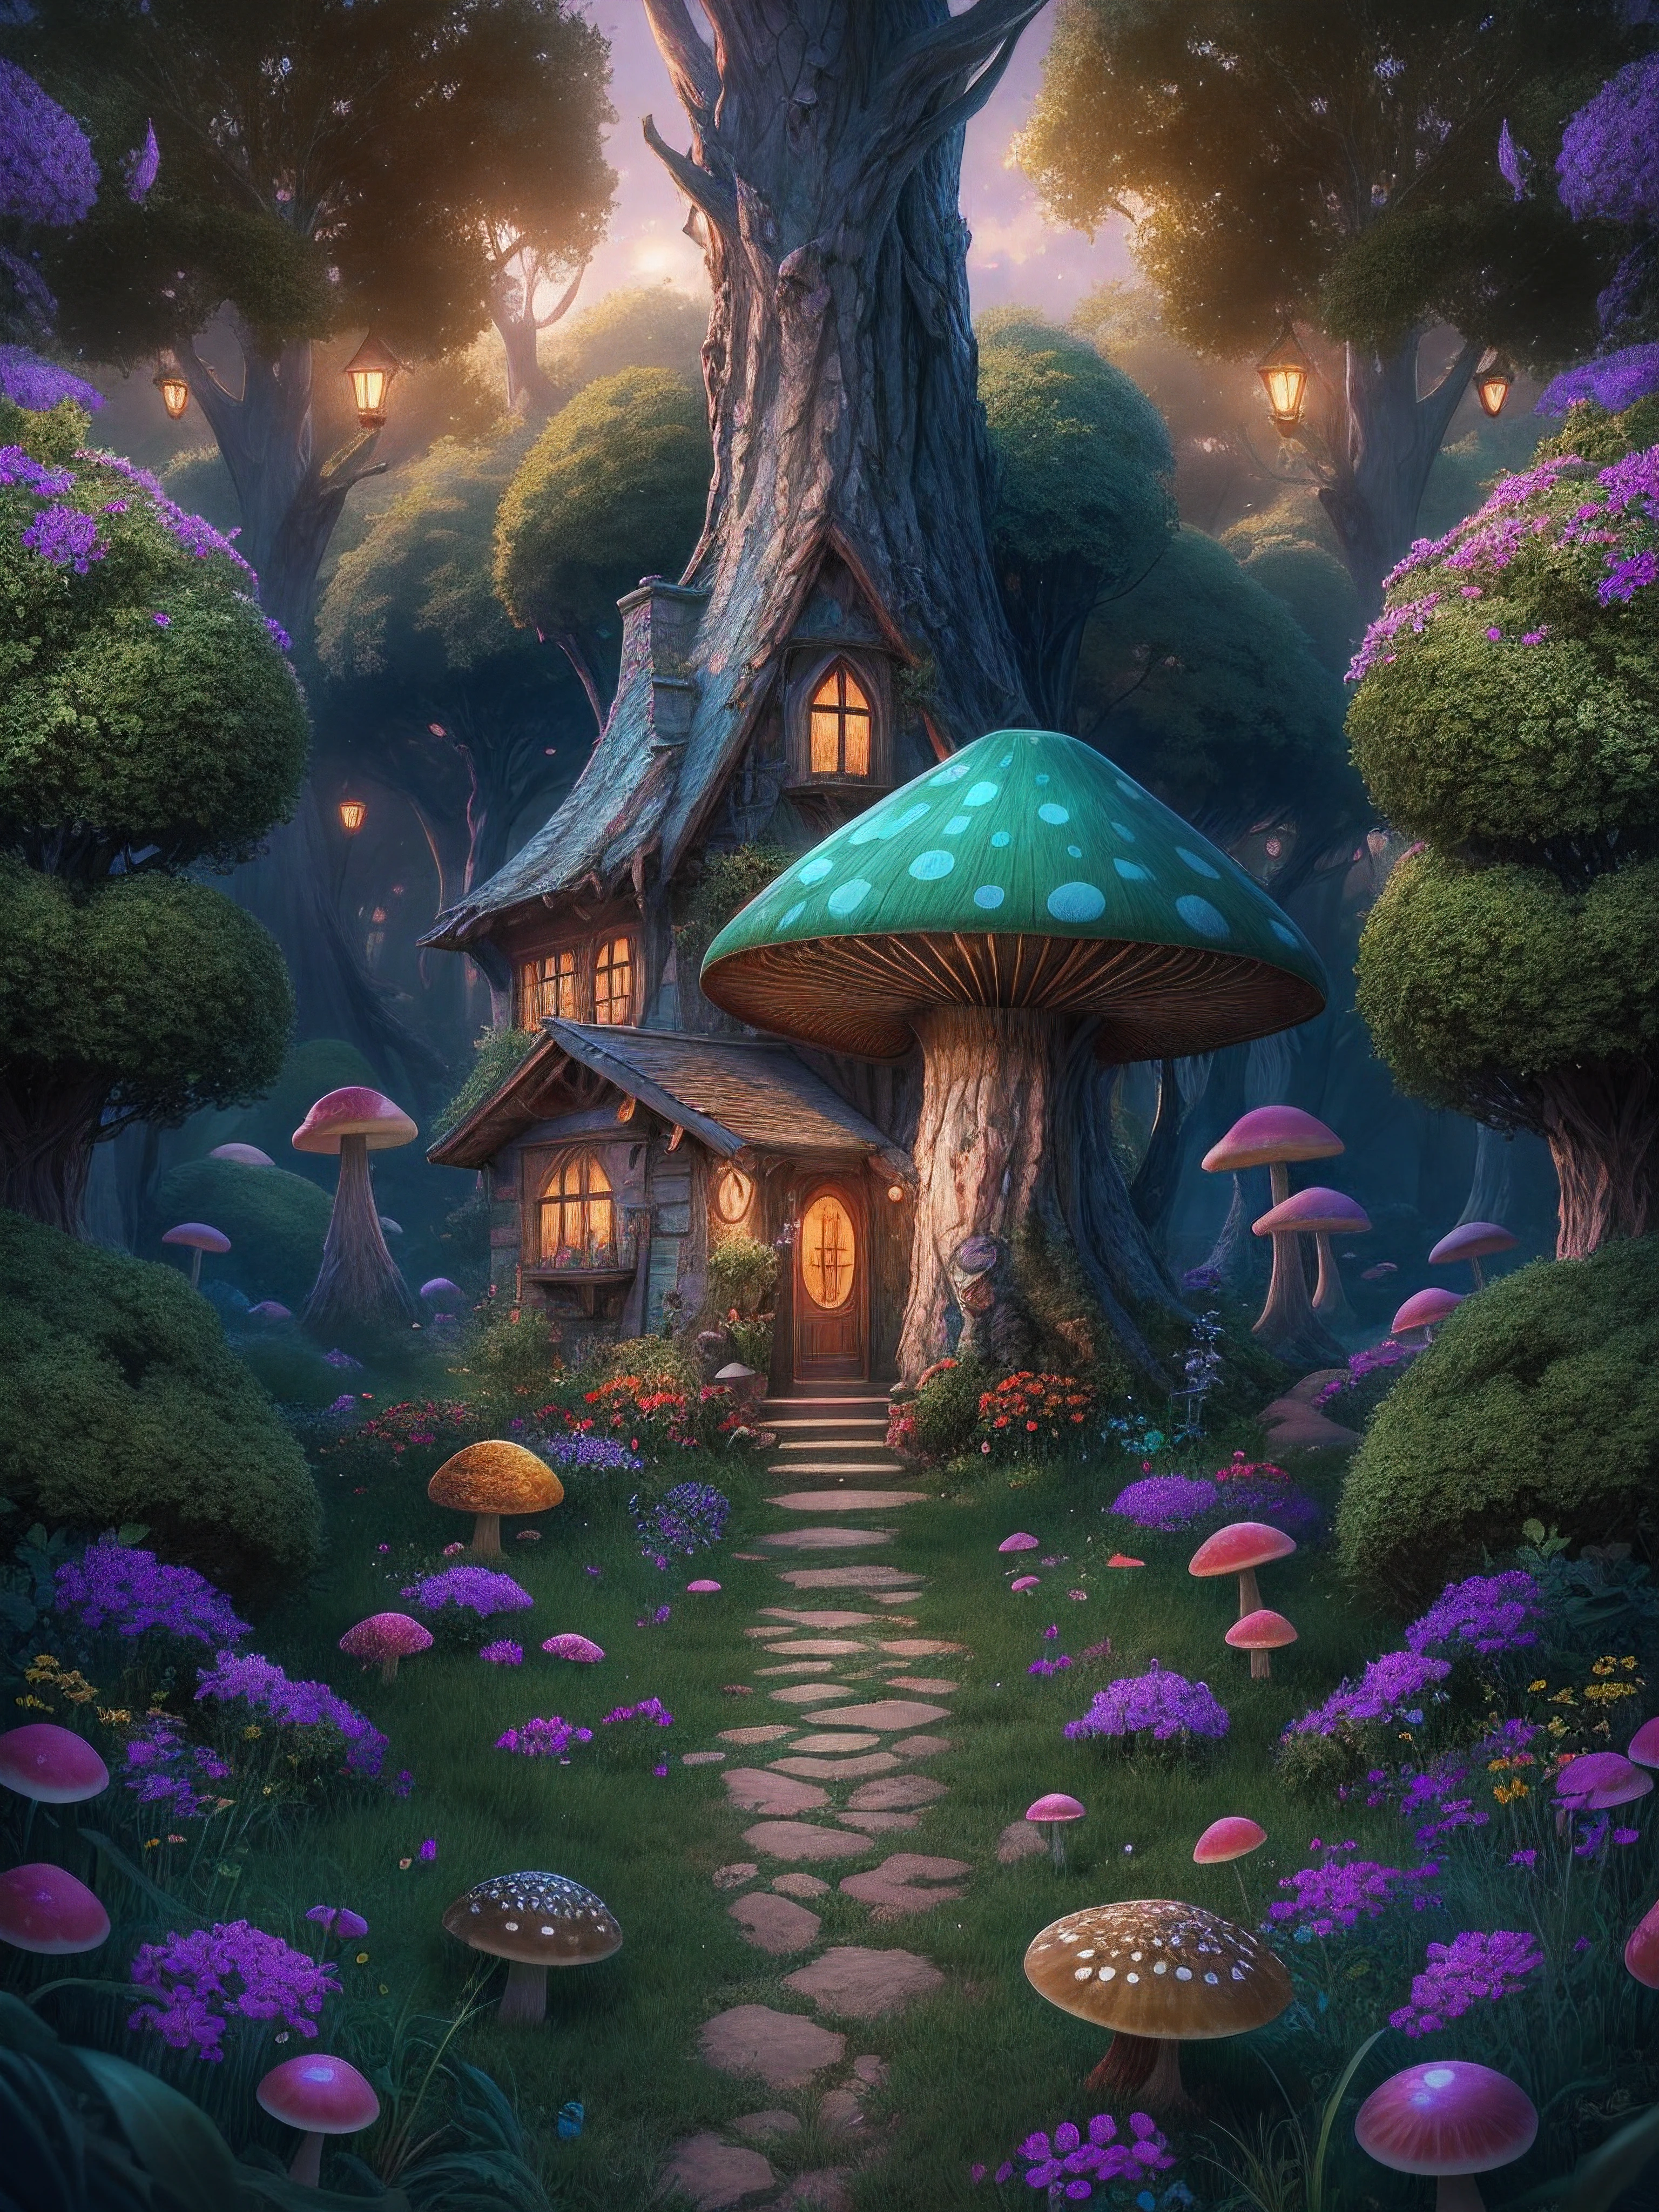 魔法森林的插圖, 有高大的綠樹, 中心的奇幻蘑菇中色彩繽紛的小房子, 魔法, 居中, 對稱, 繪, 錯綜複雜, 體積照明, 美麗的, 豐富的深色傑作, 銳利的焦點, 超詳細, 天文攝影. 構圖非常詳細, 8K, 完美的構圖., 超高畫質, 實際的, 鮮豔的色彩, 非常詳細, 超高清繪圖, 筆墨, 完美的構圖, 美麗的 detailed 錯綜複雜 insanely detailed octane render trending on artstation, 8K藝術攝影, photo實際的 concept art, 柔和 自然 体积 电影 完美 光线